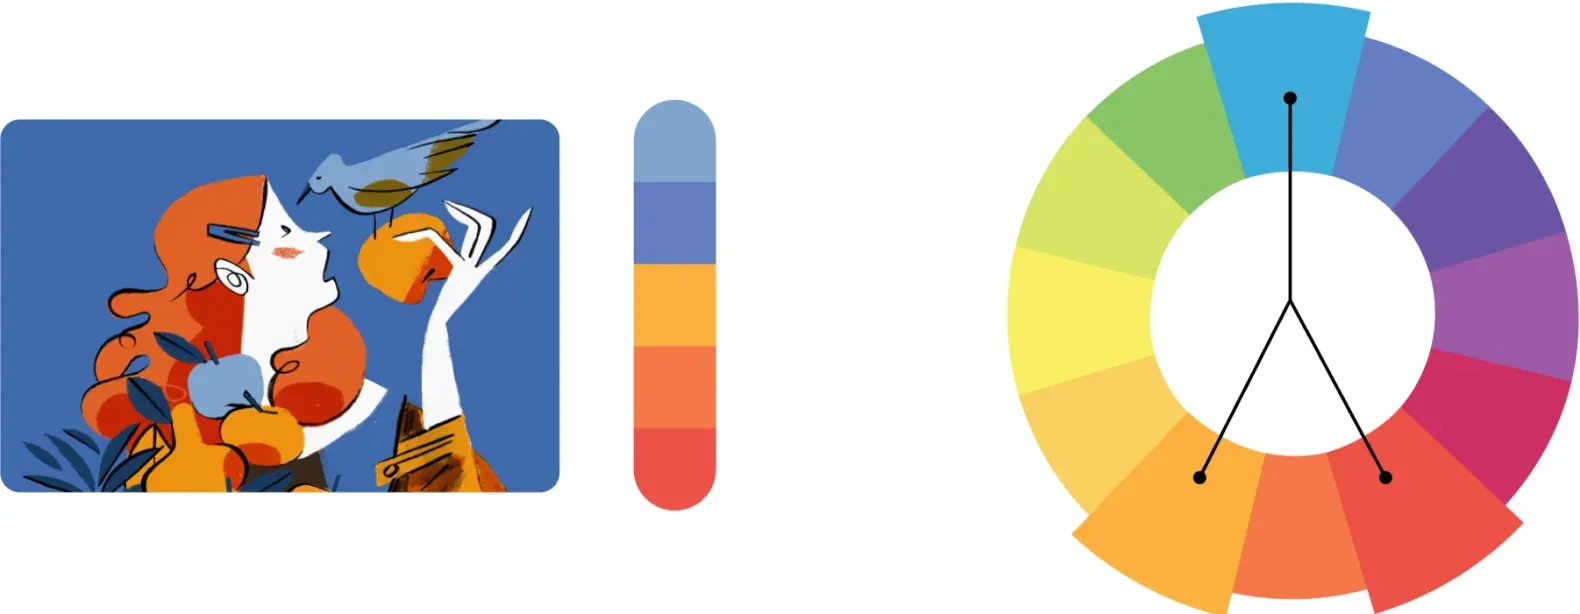 Exemple de palette de couleurs créée à l’aide de couleurs complémentaires fractionnées sur la roulette de couleurs.